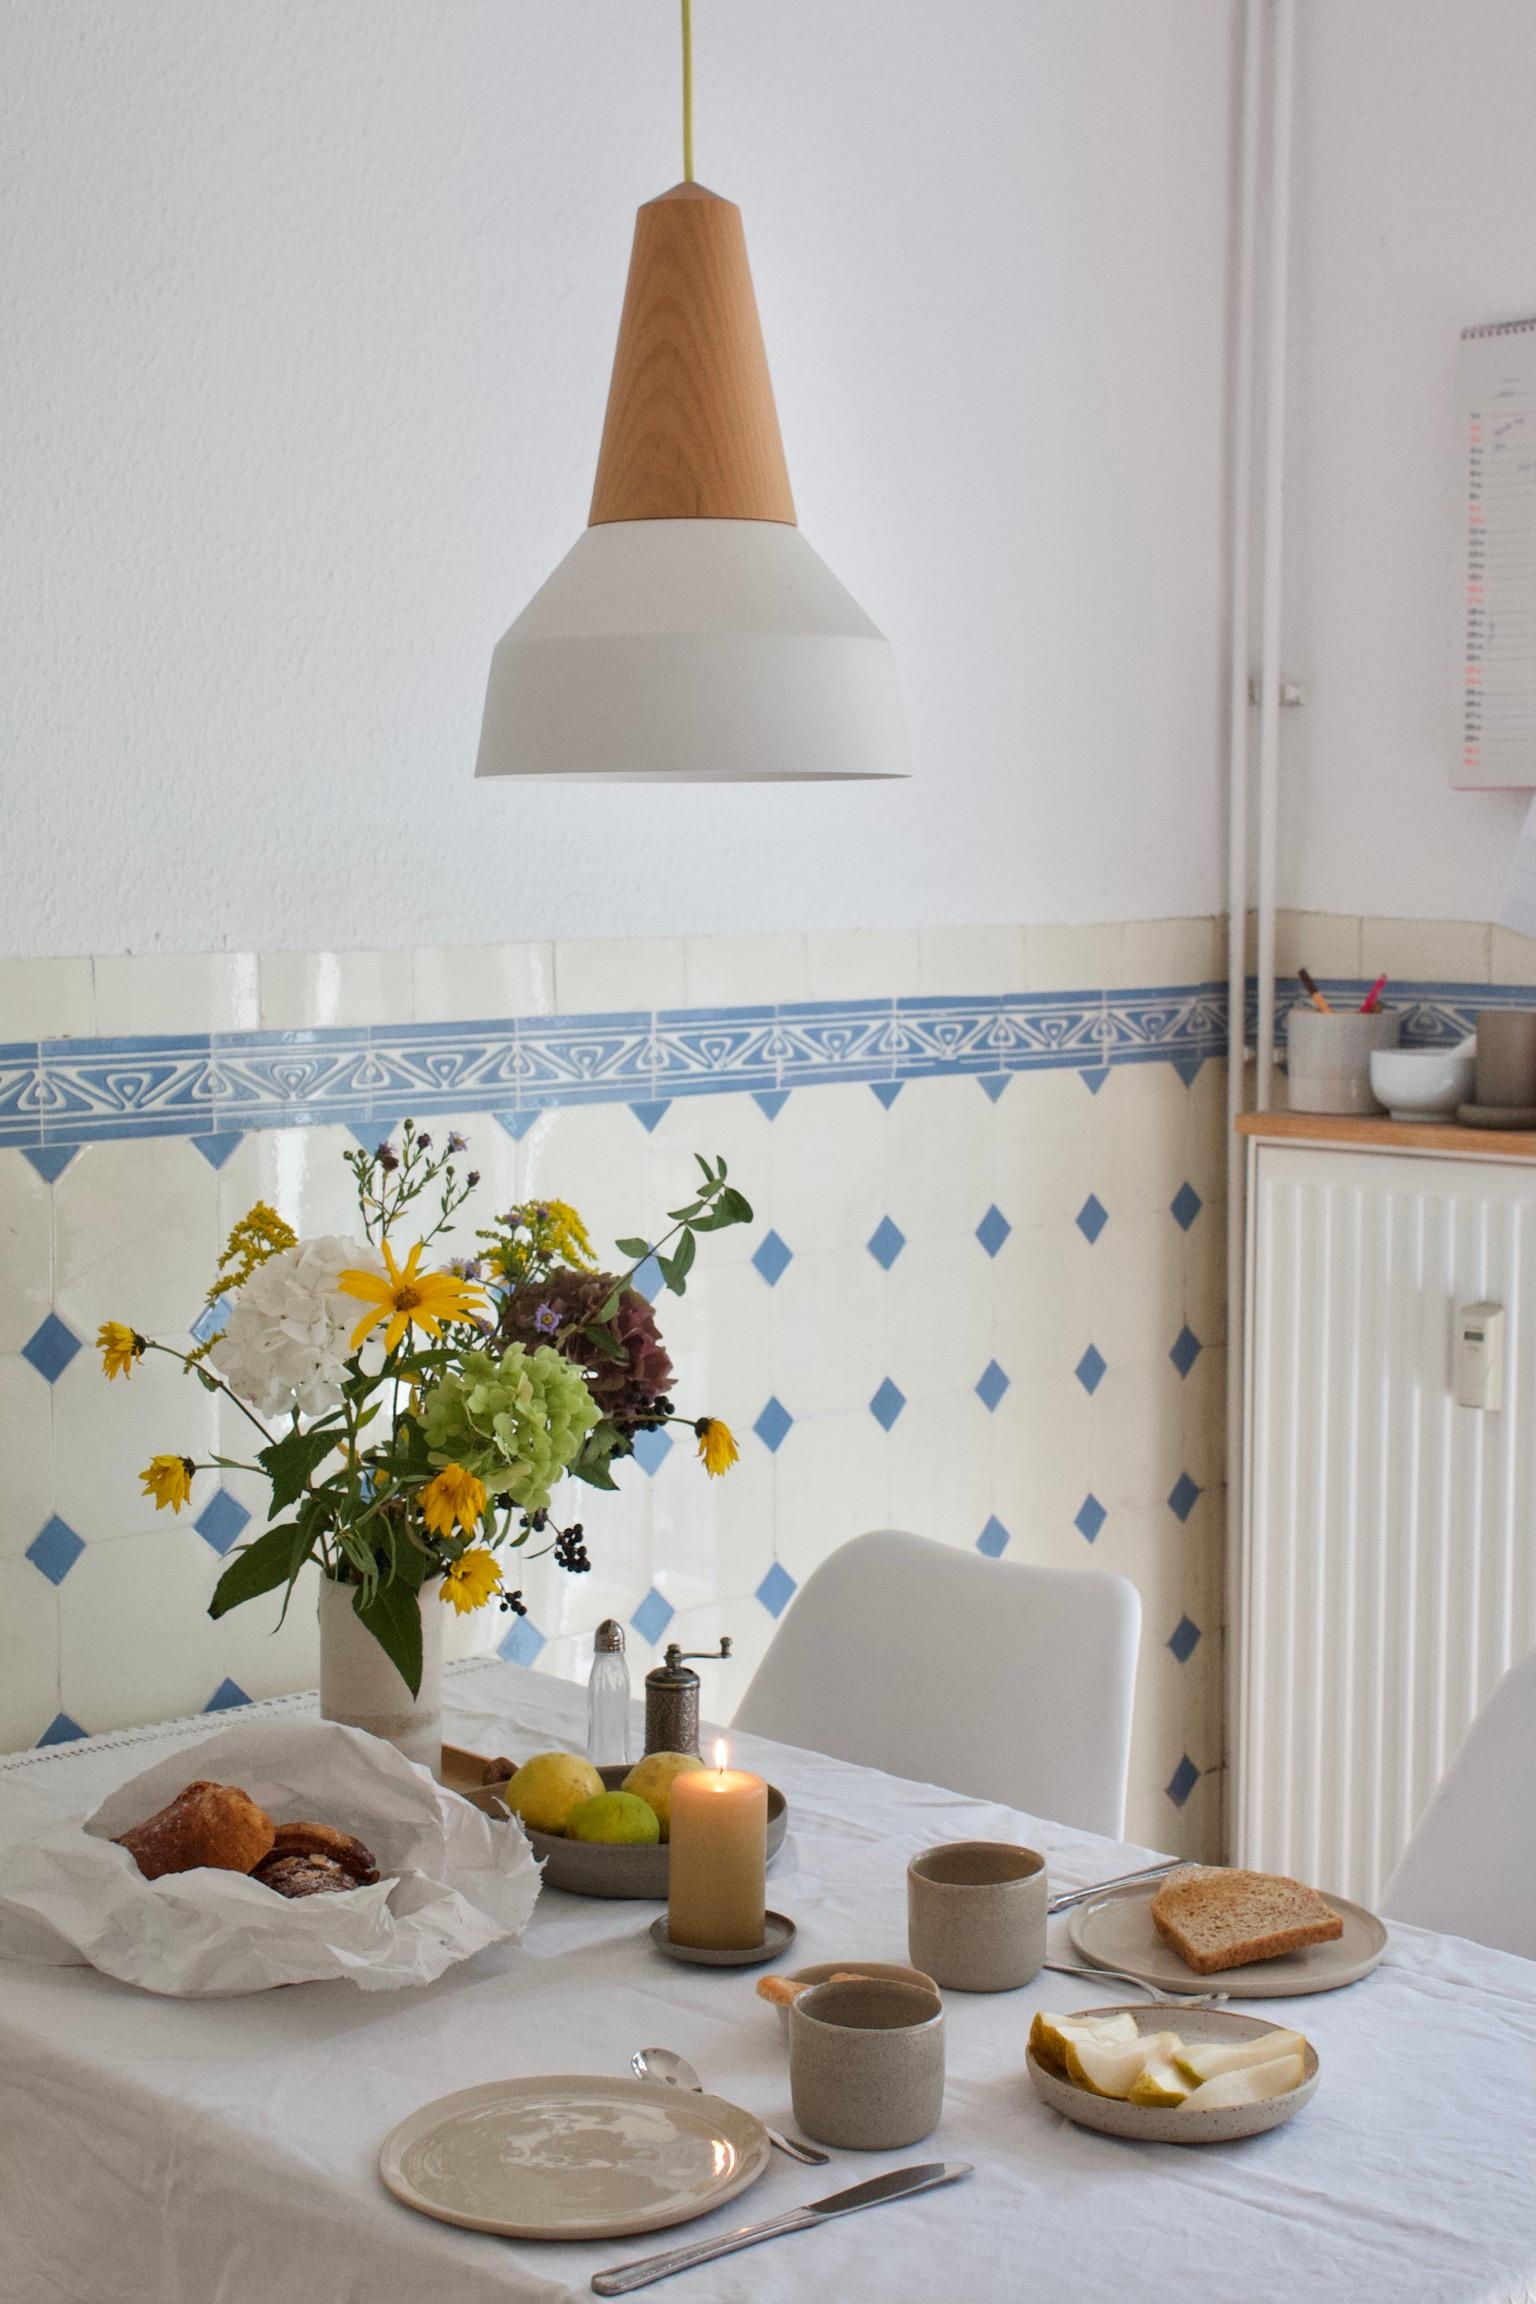 #sonntagsfrühstück #altbaufliesen #fliesen #lampendesign #keramik #küche #lampe #hygge 